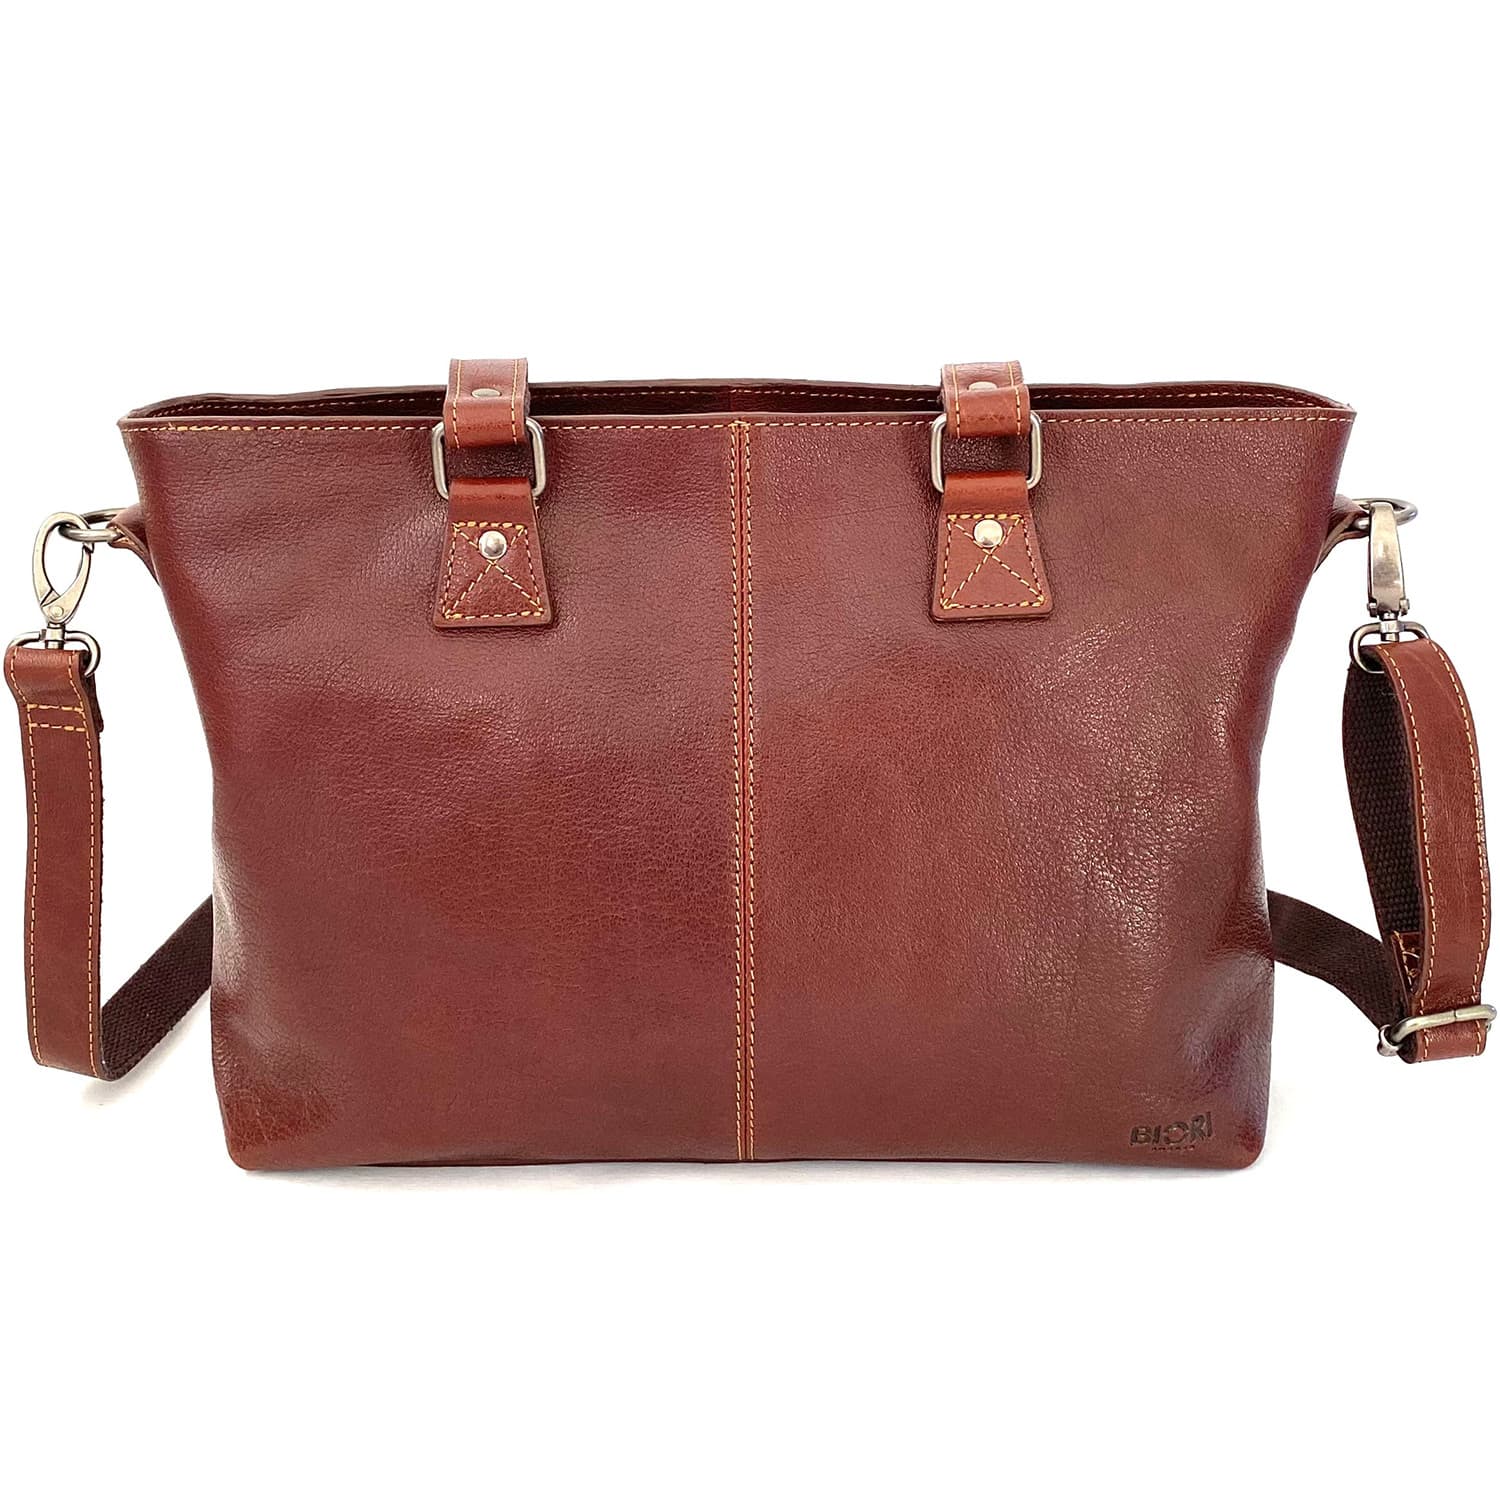 Biori Laptop Handbag 5126 Brown